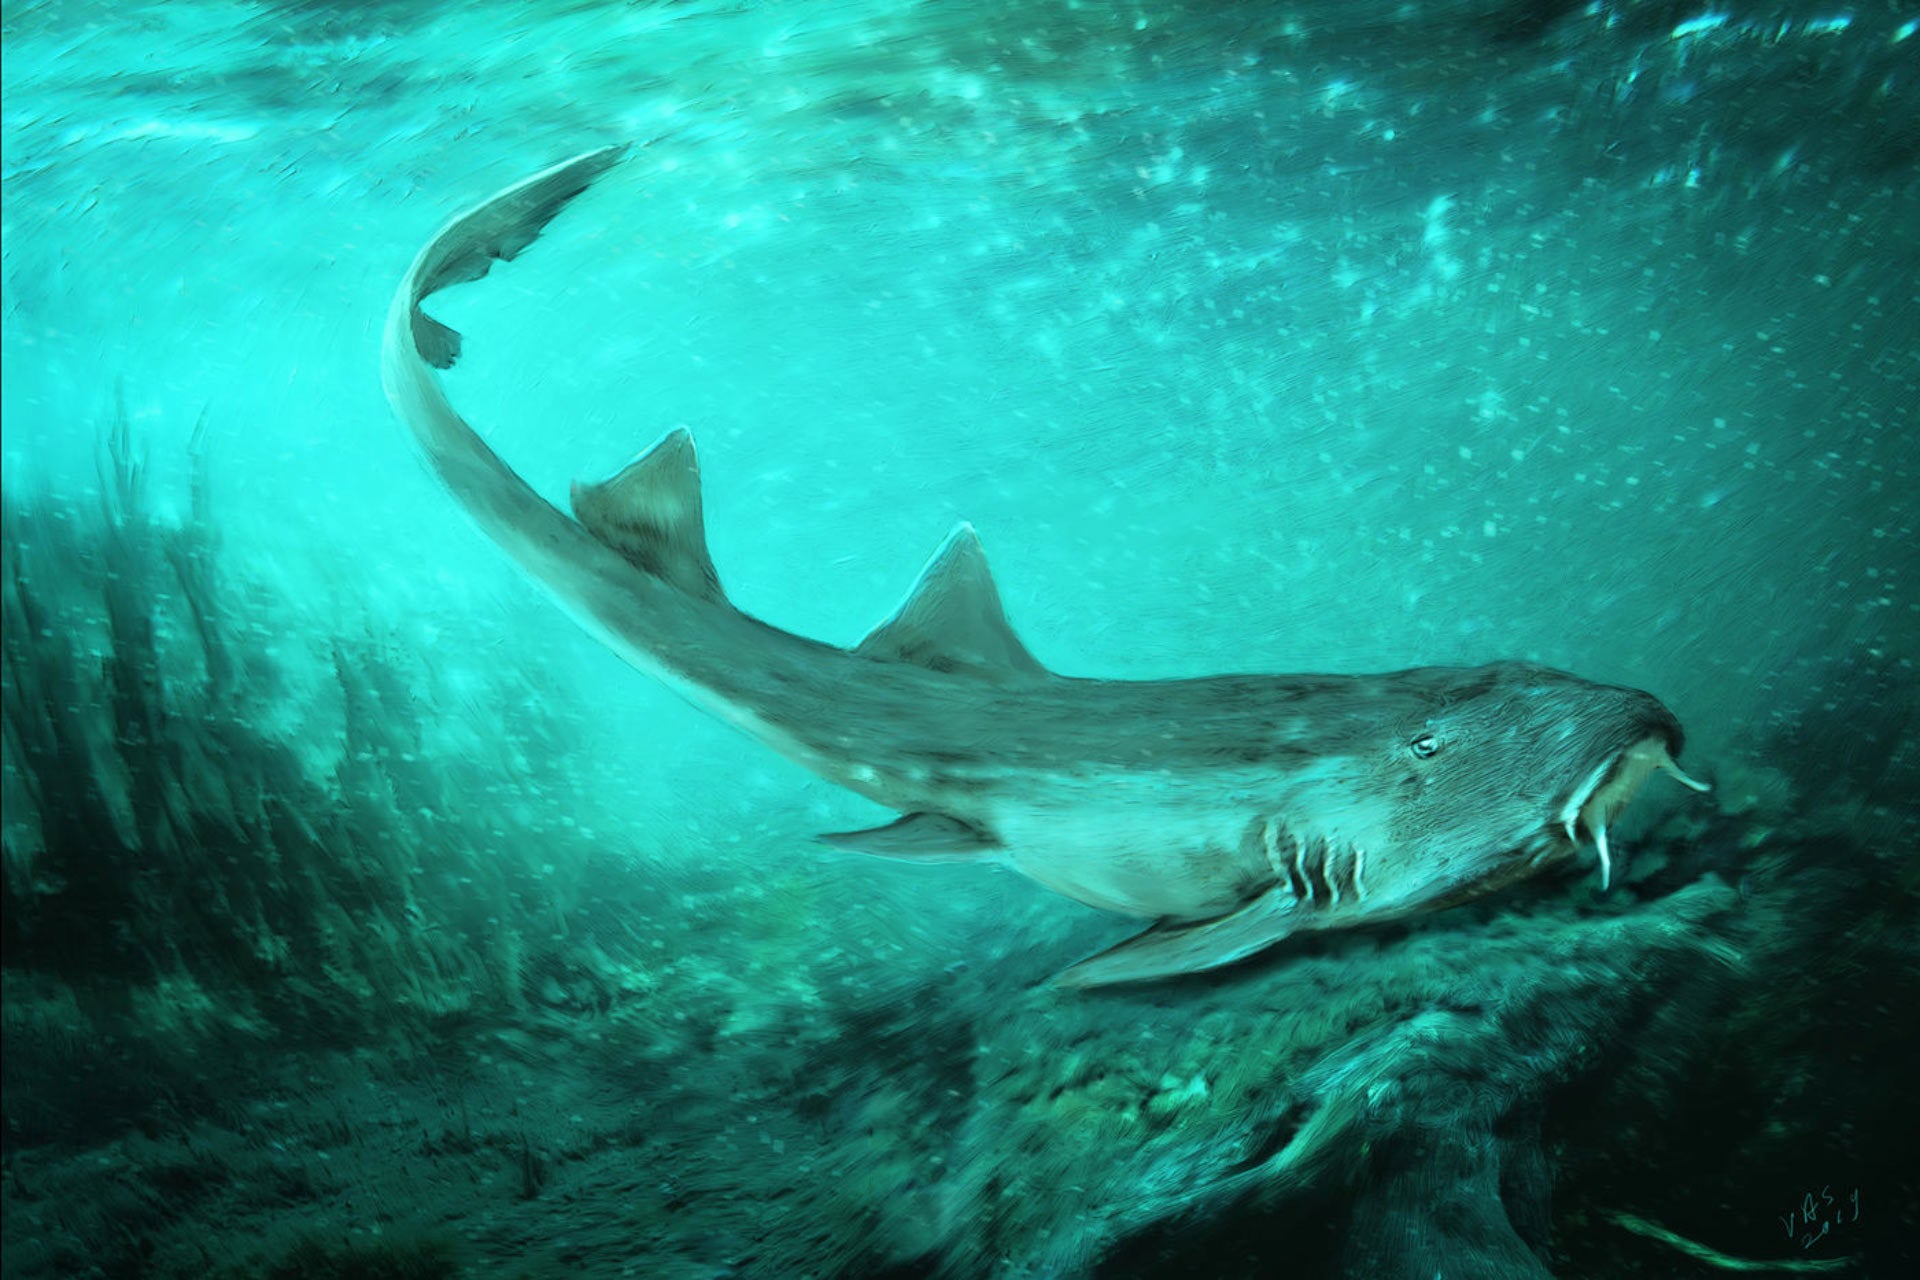 Δύτες εντόπισαν τα δόντια του μεγαλύτερου προϊστορικού καρχαρία μέσα σε υποβρύχιο σπήλαιο (βίντεο)